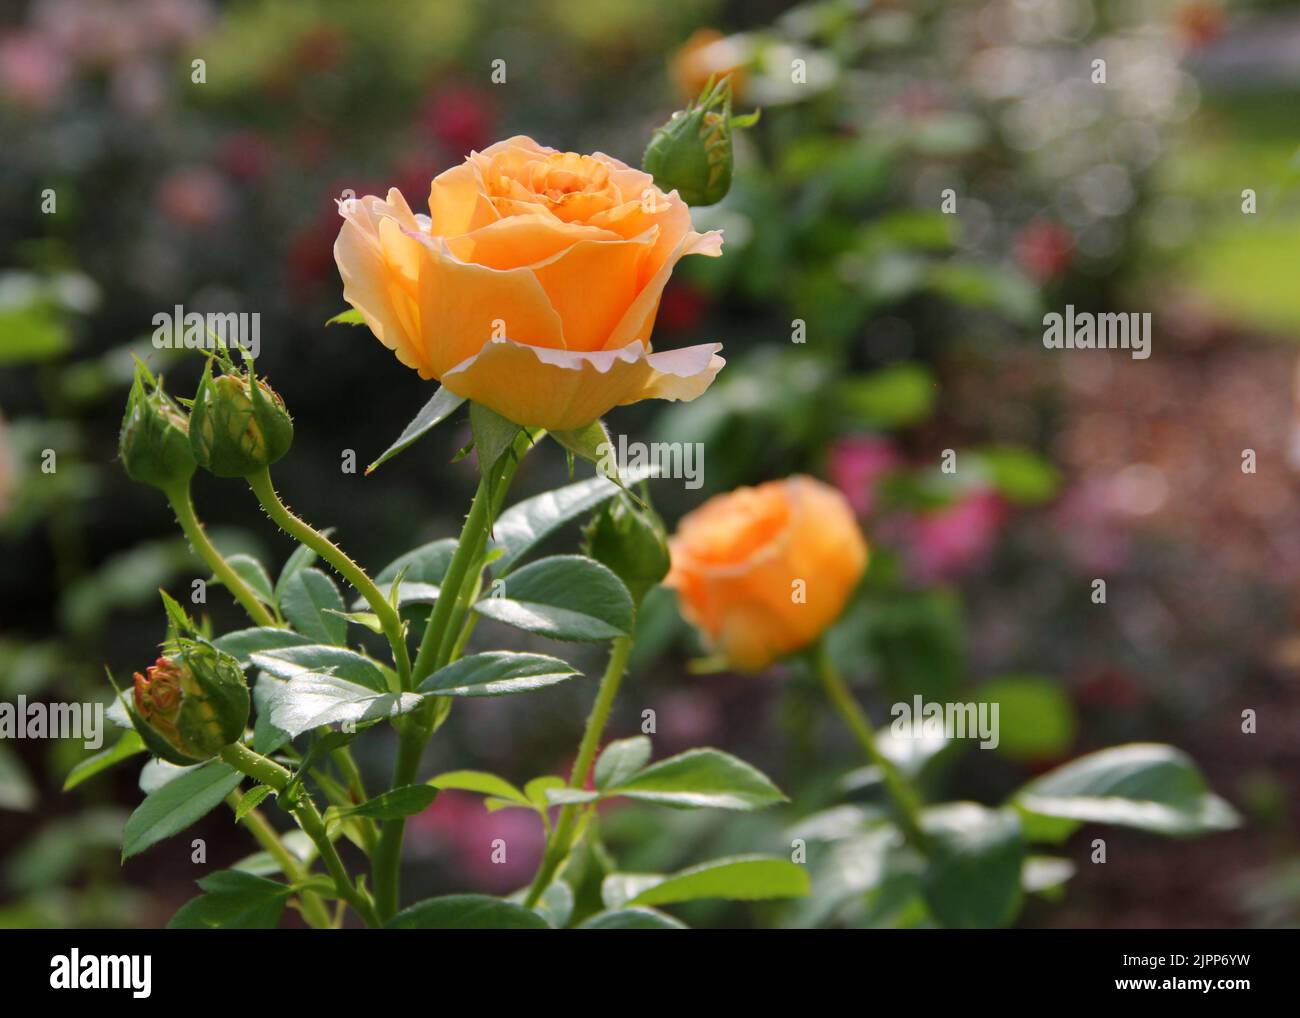 Schöne gelbe Rose Blume in einem Garten. Stockfoto